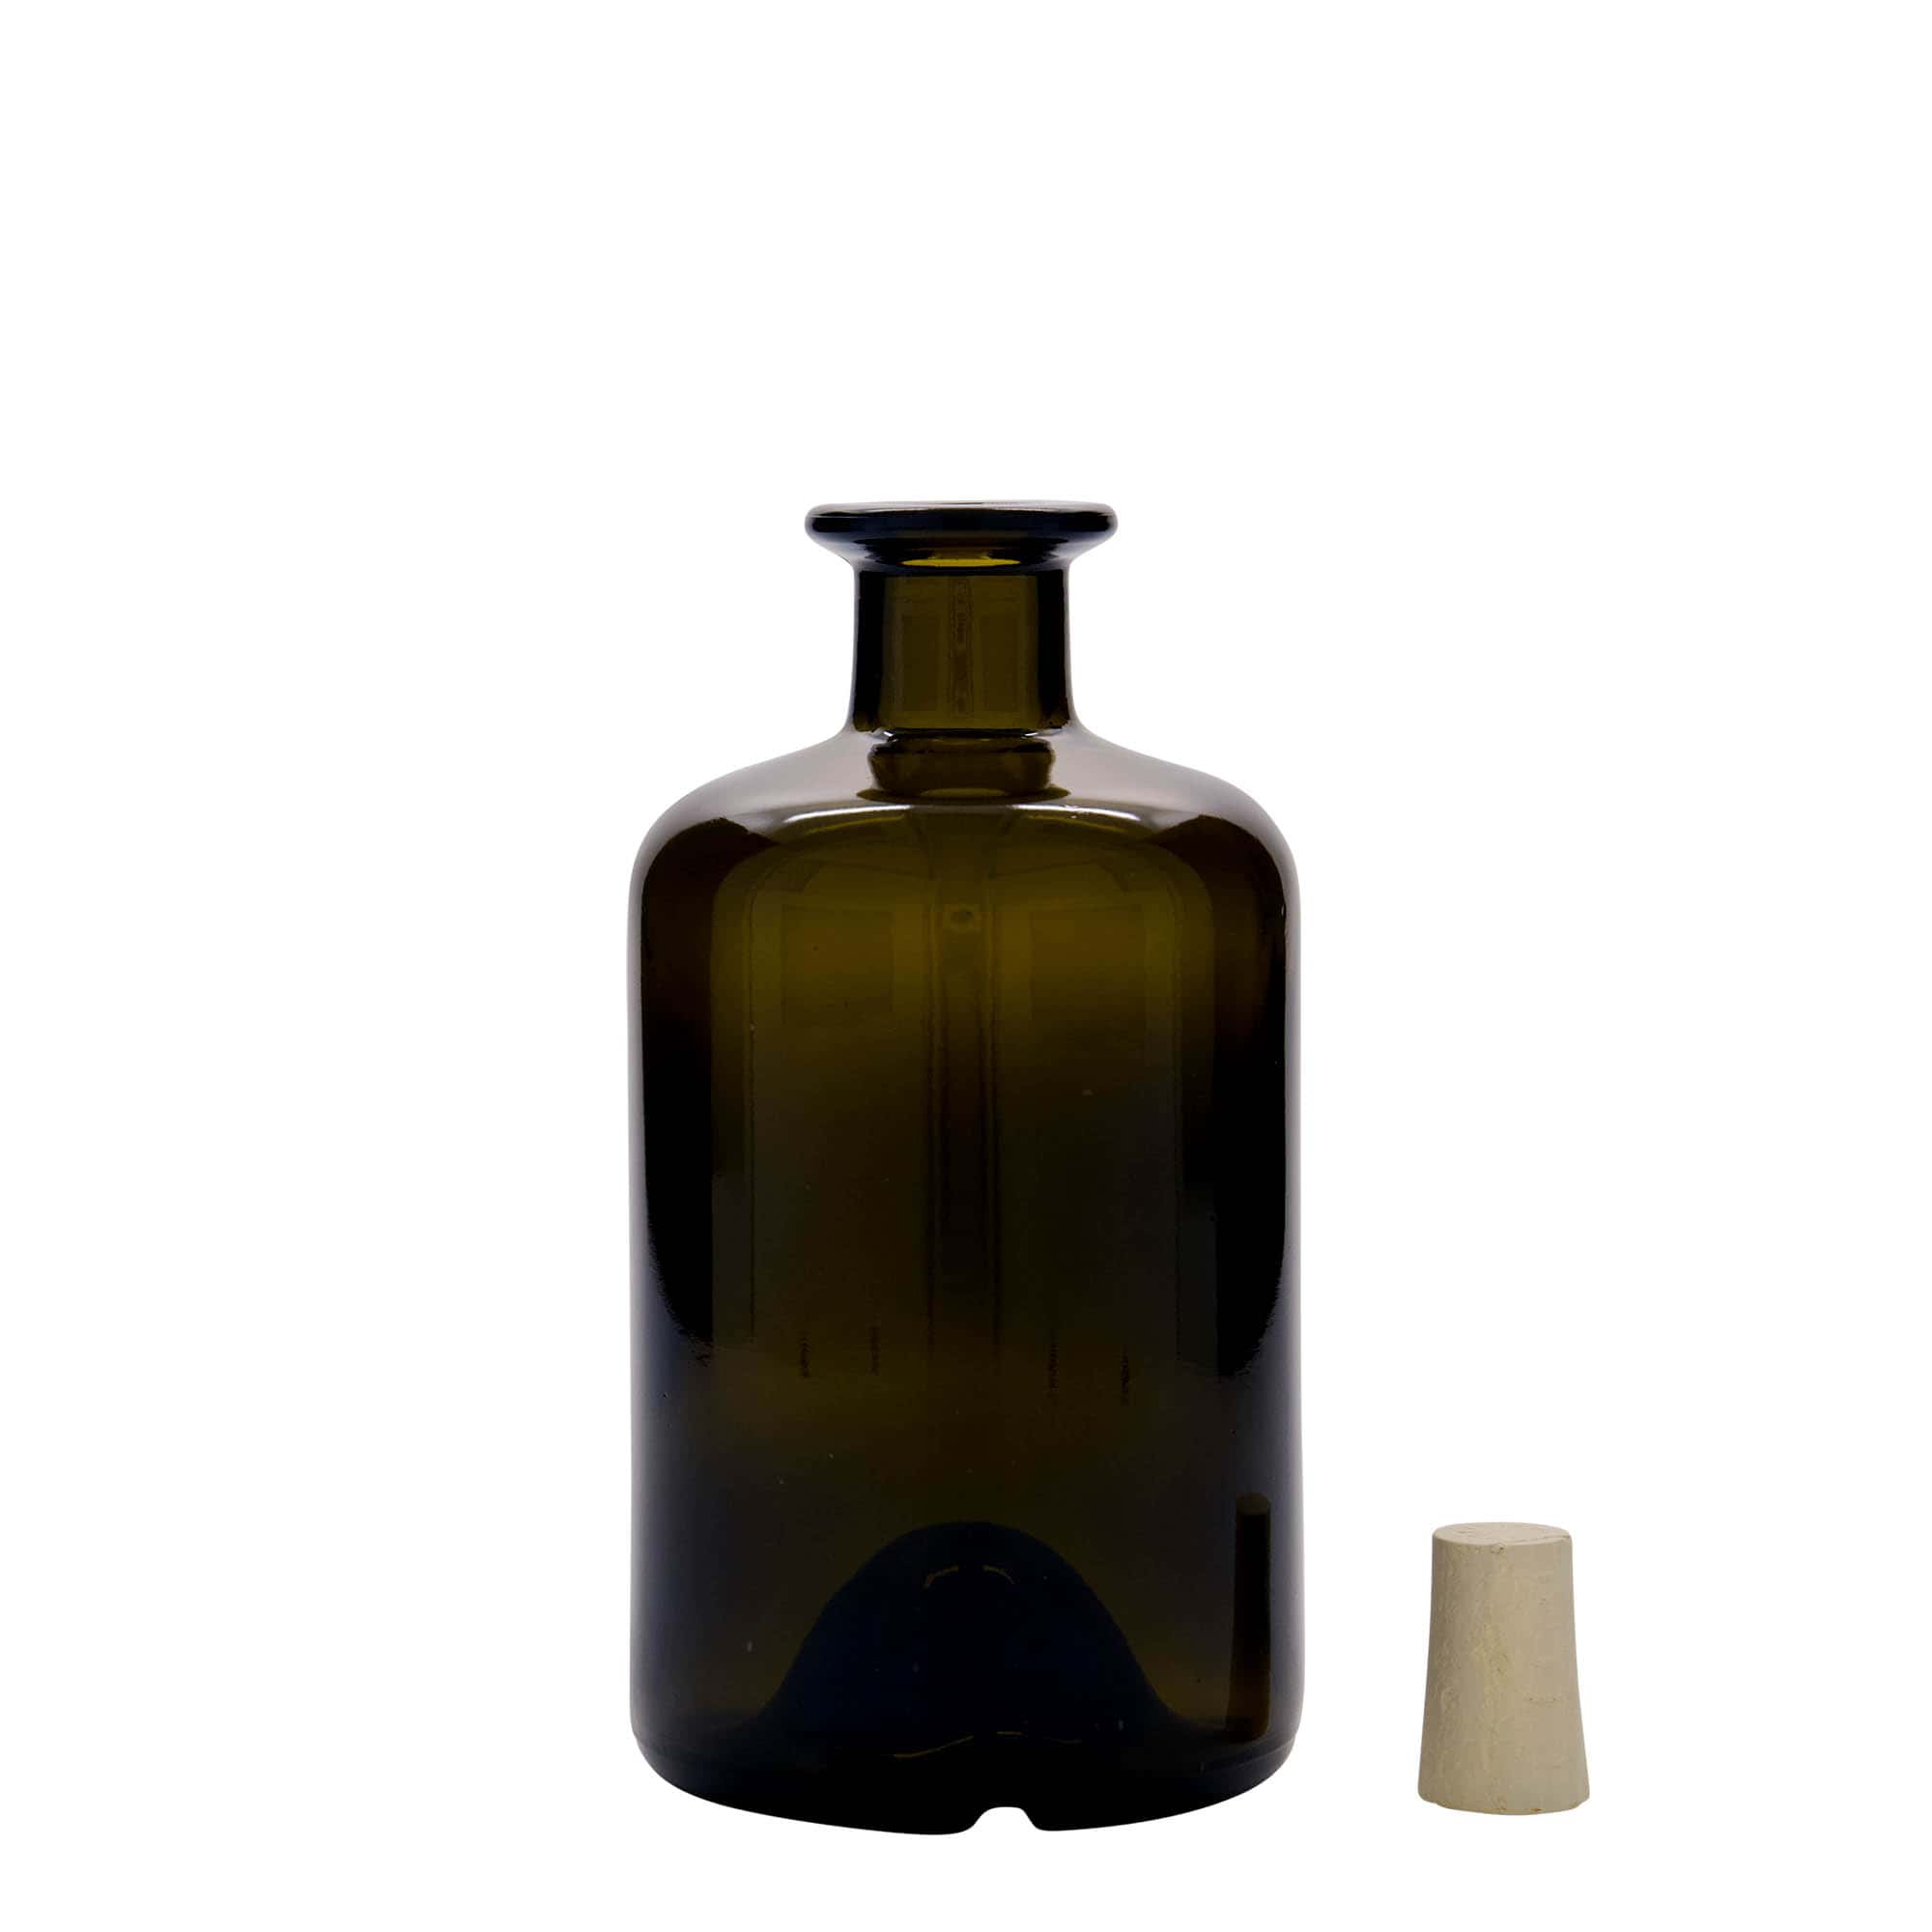 500 ml butelka szklana apteczna, kolor zielony antyczny, zamknięcie: korek